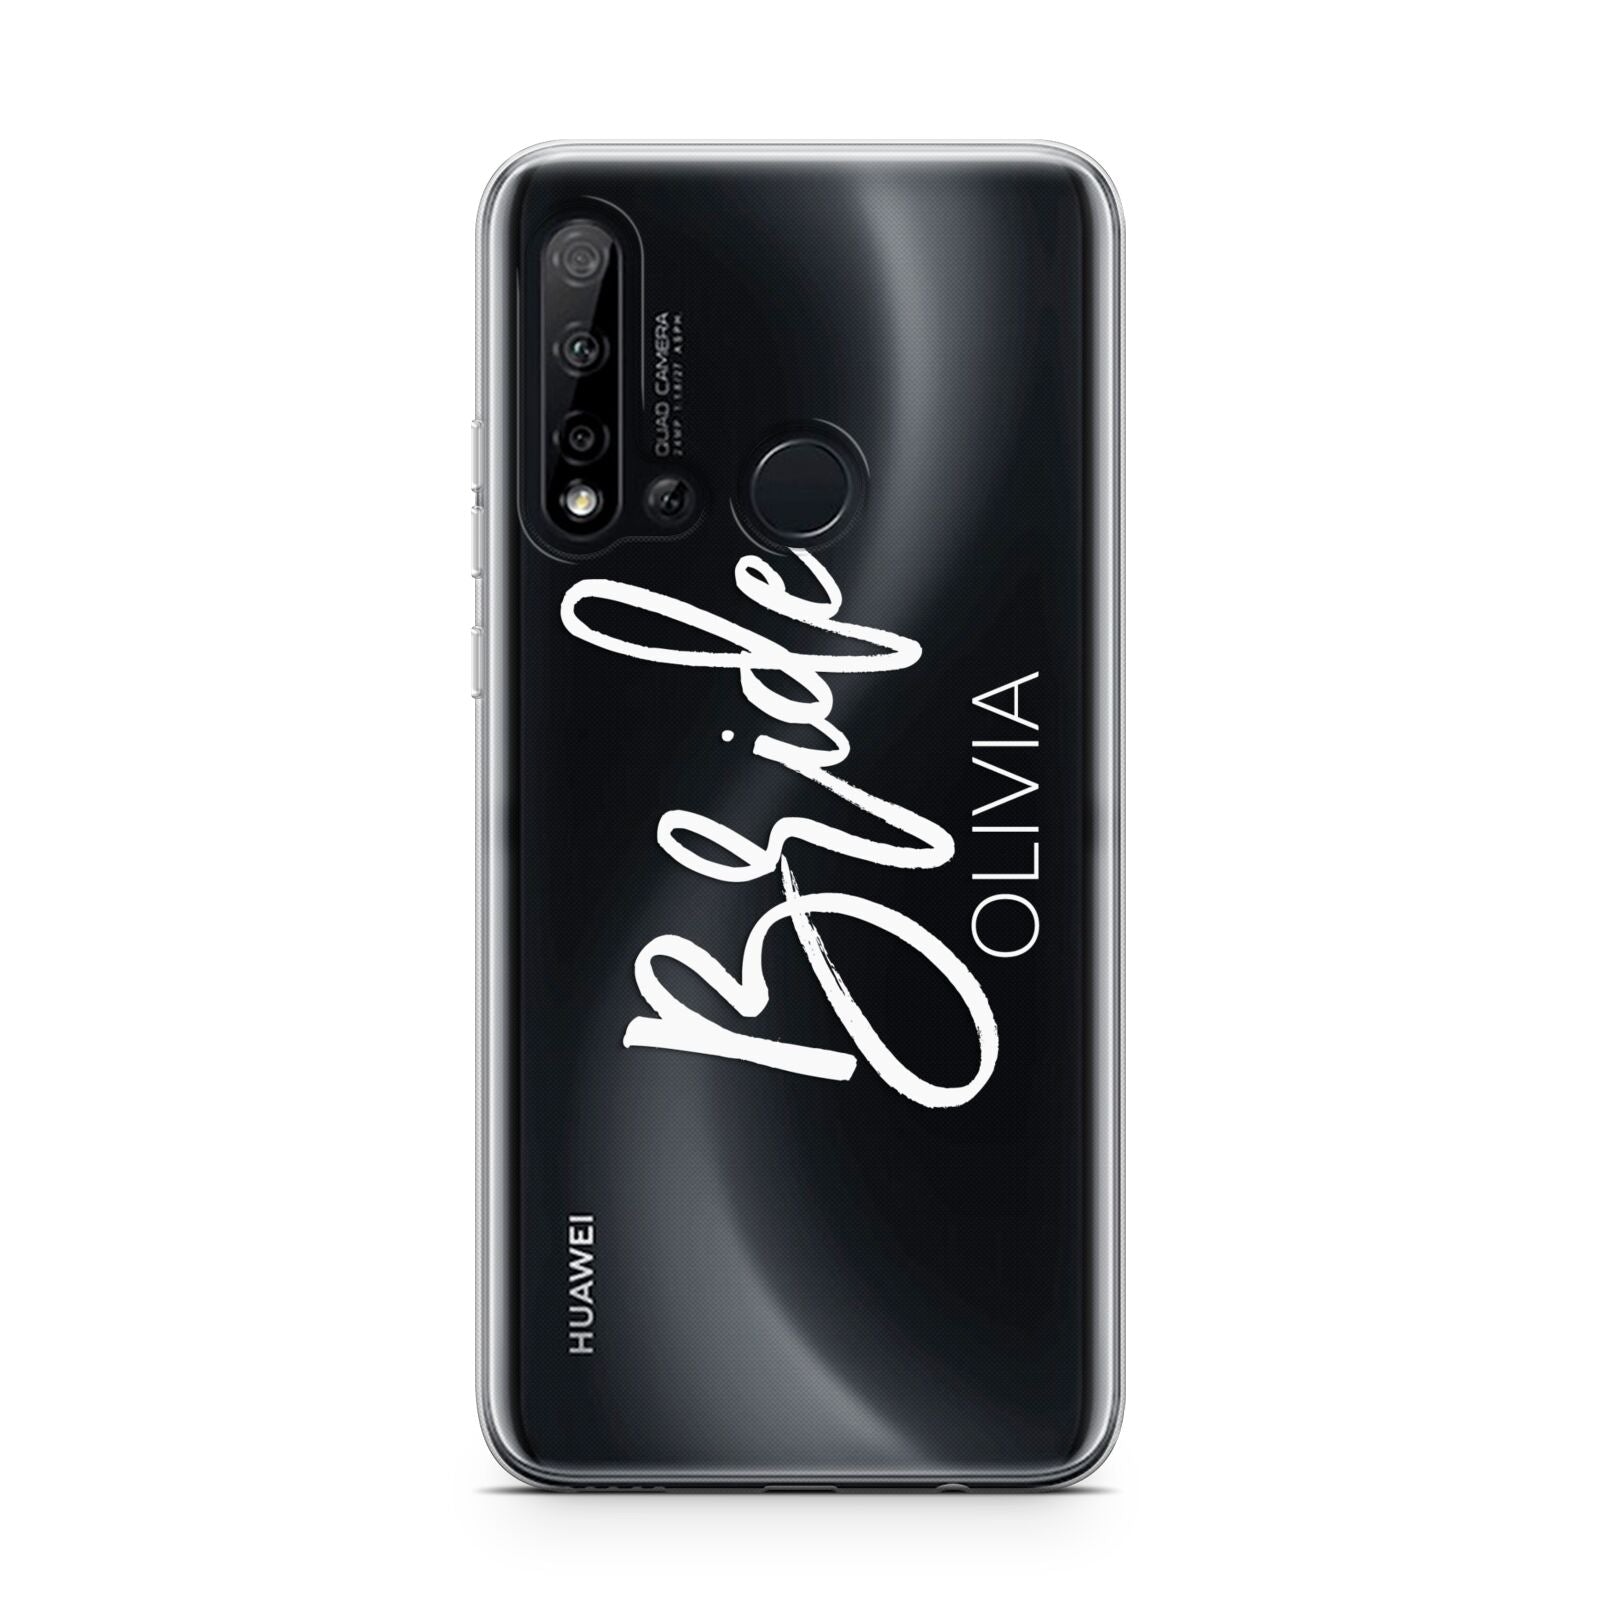 Personalised Bride Huawei P20 Lite 5G Phone Case